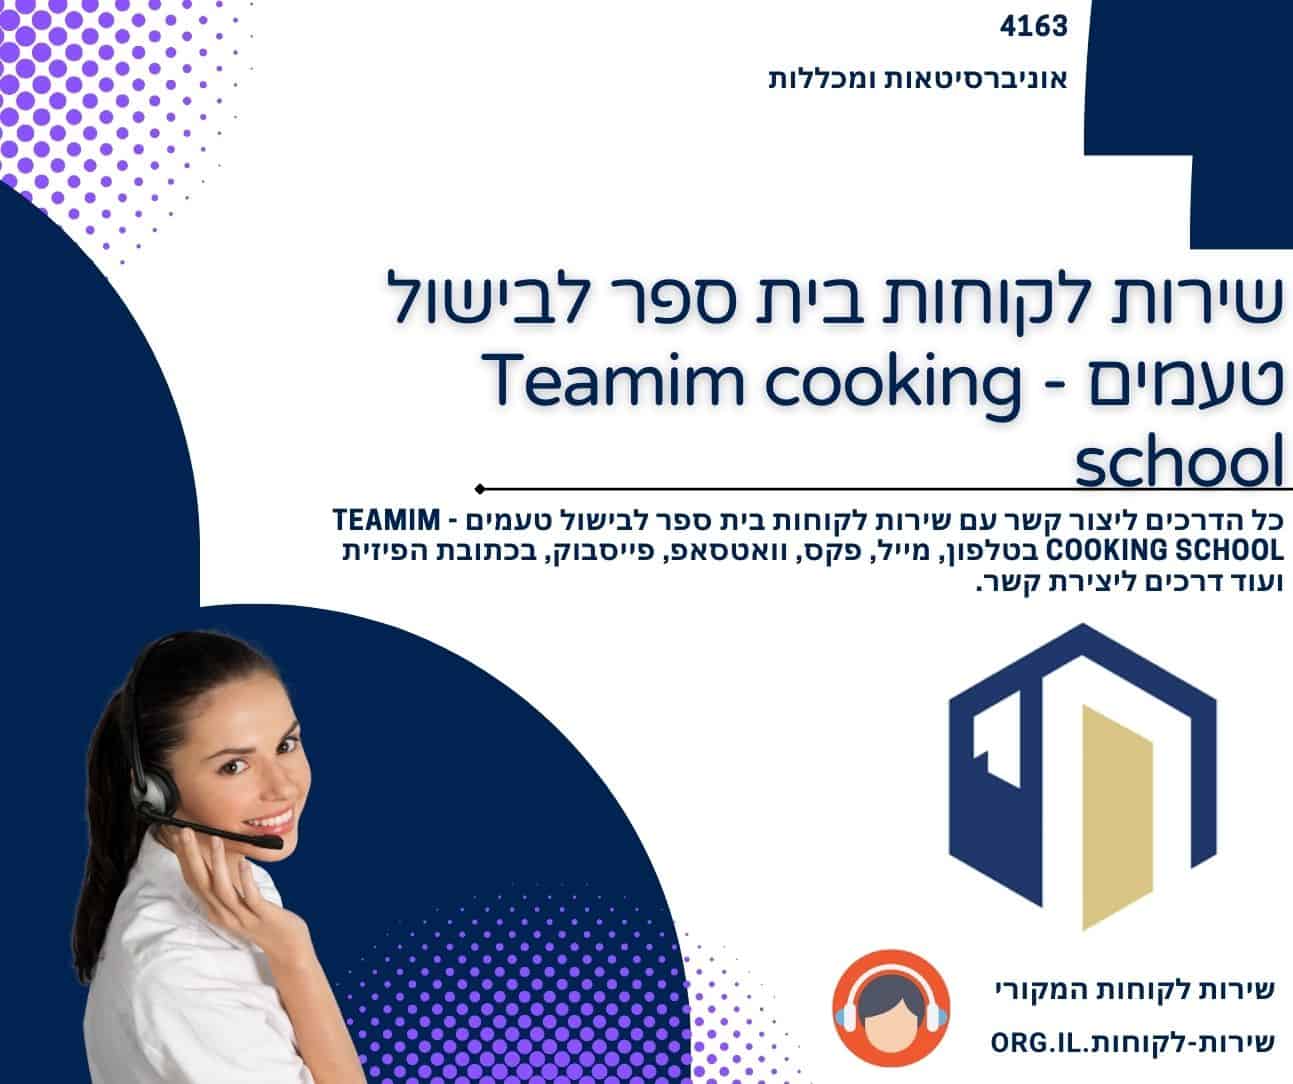 שירות לקוחות בית ספר לבישול טעמים - Teamim cooking school